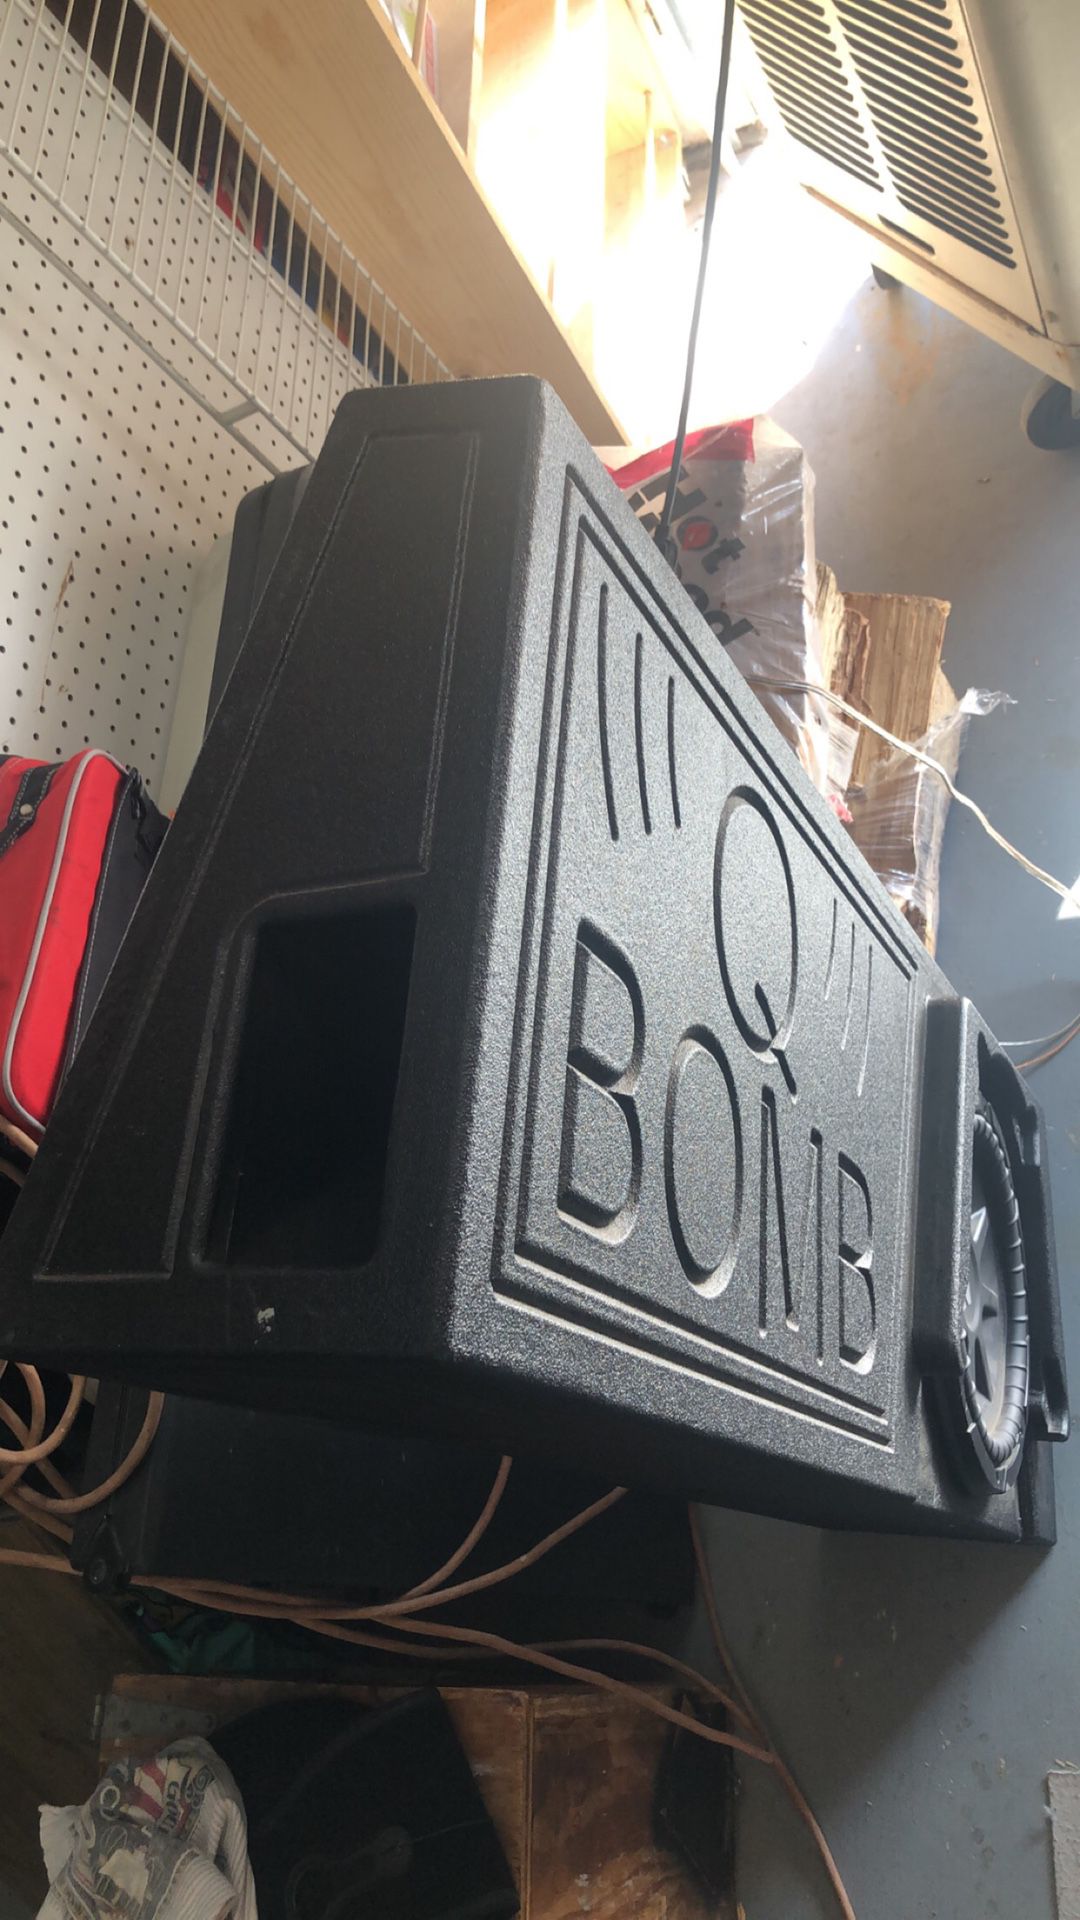 Q bomb sub box